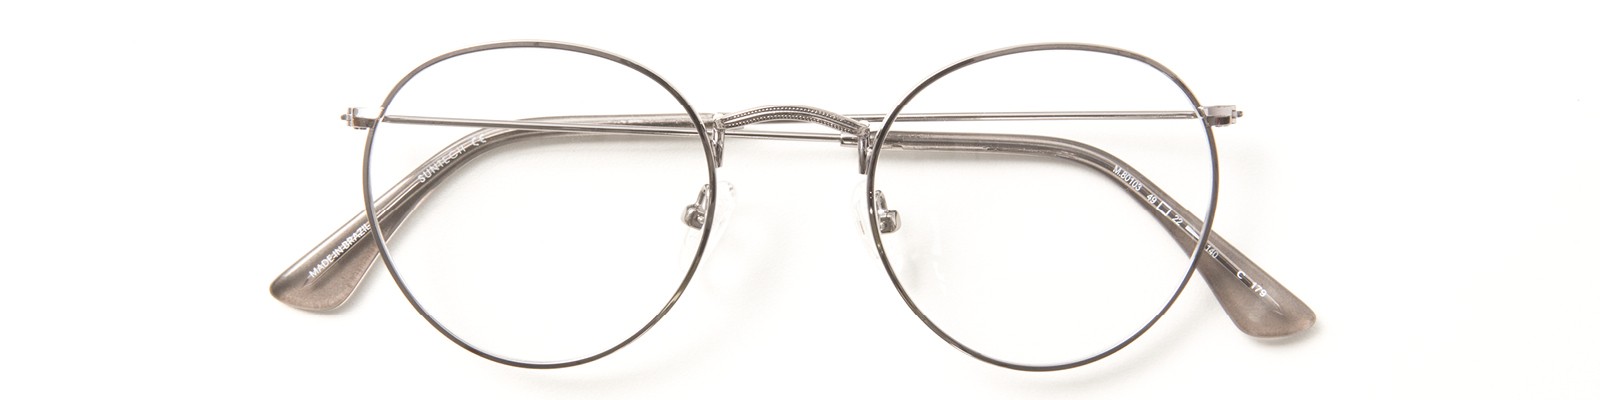 oculos-oftalmicos